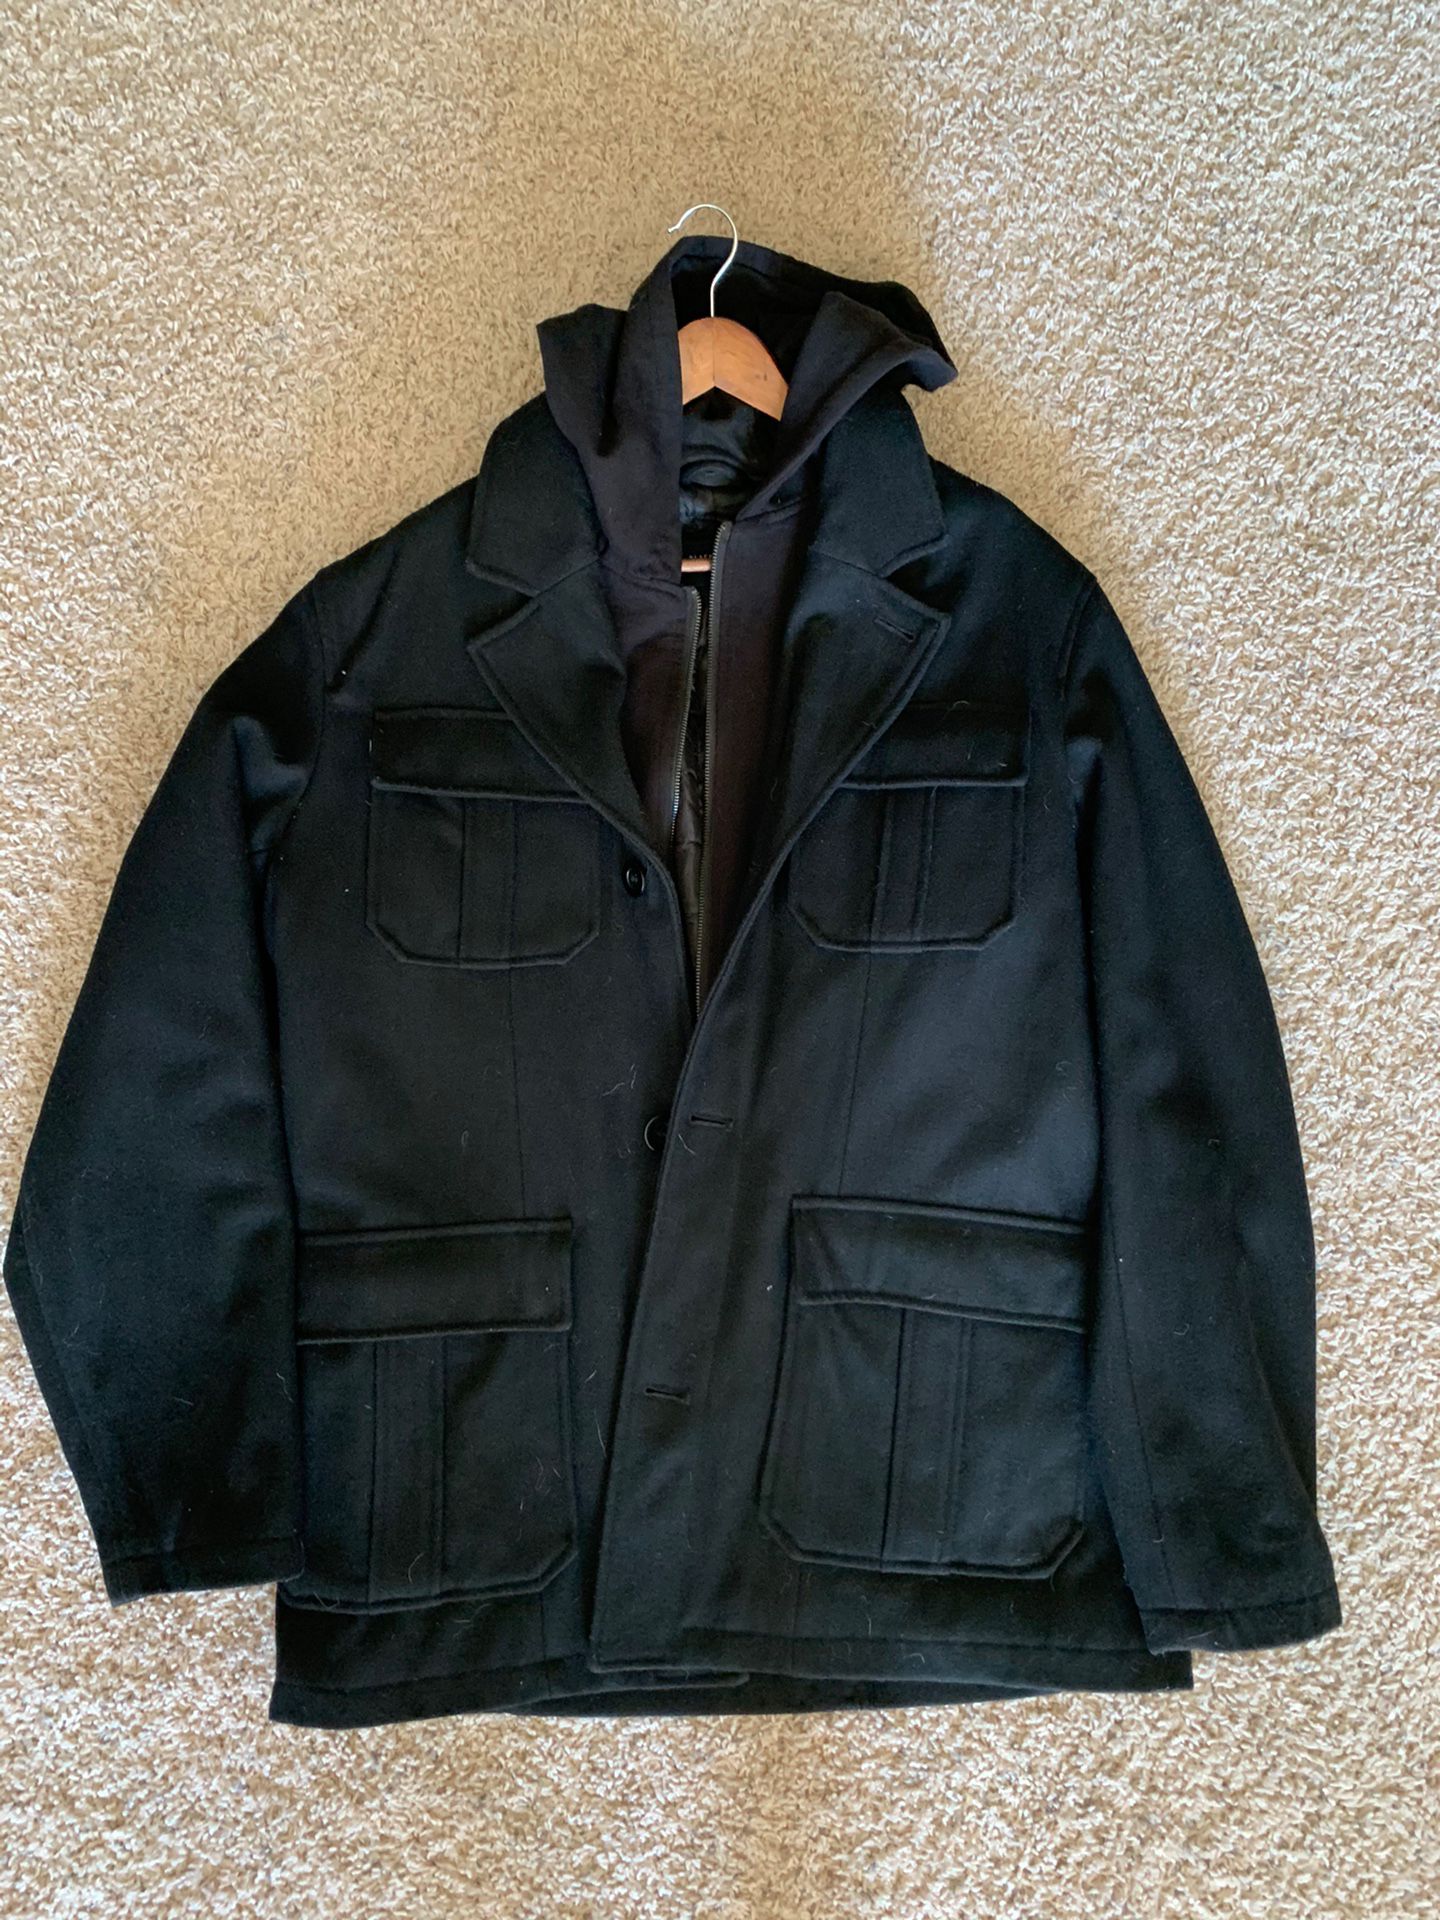 Black Rivet Wool Coat w Removable Hood and Bib